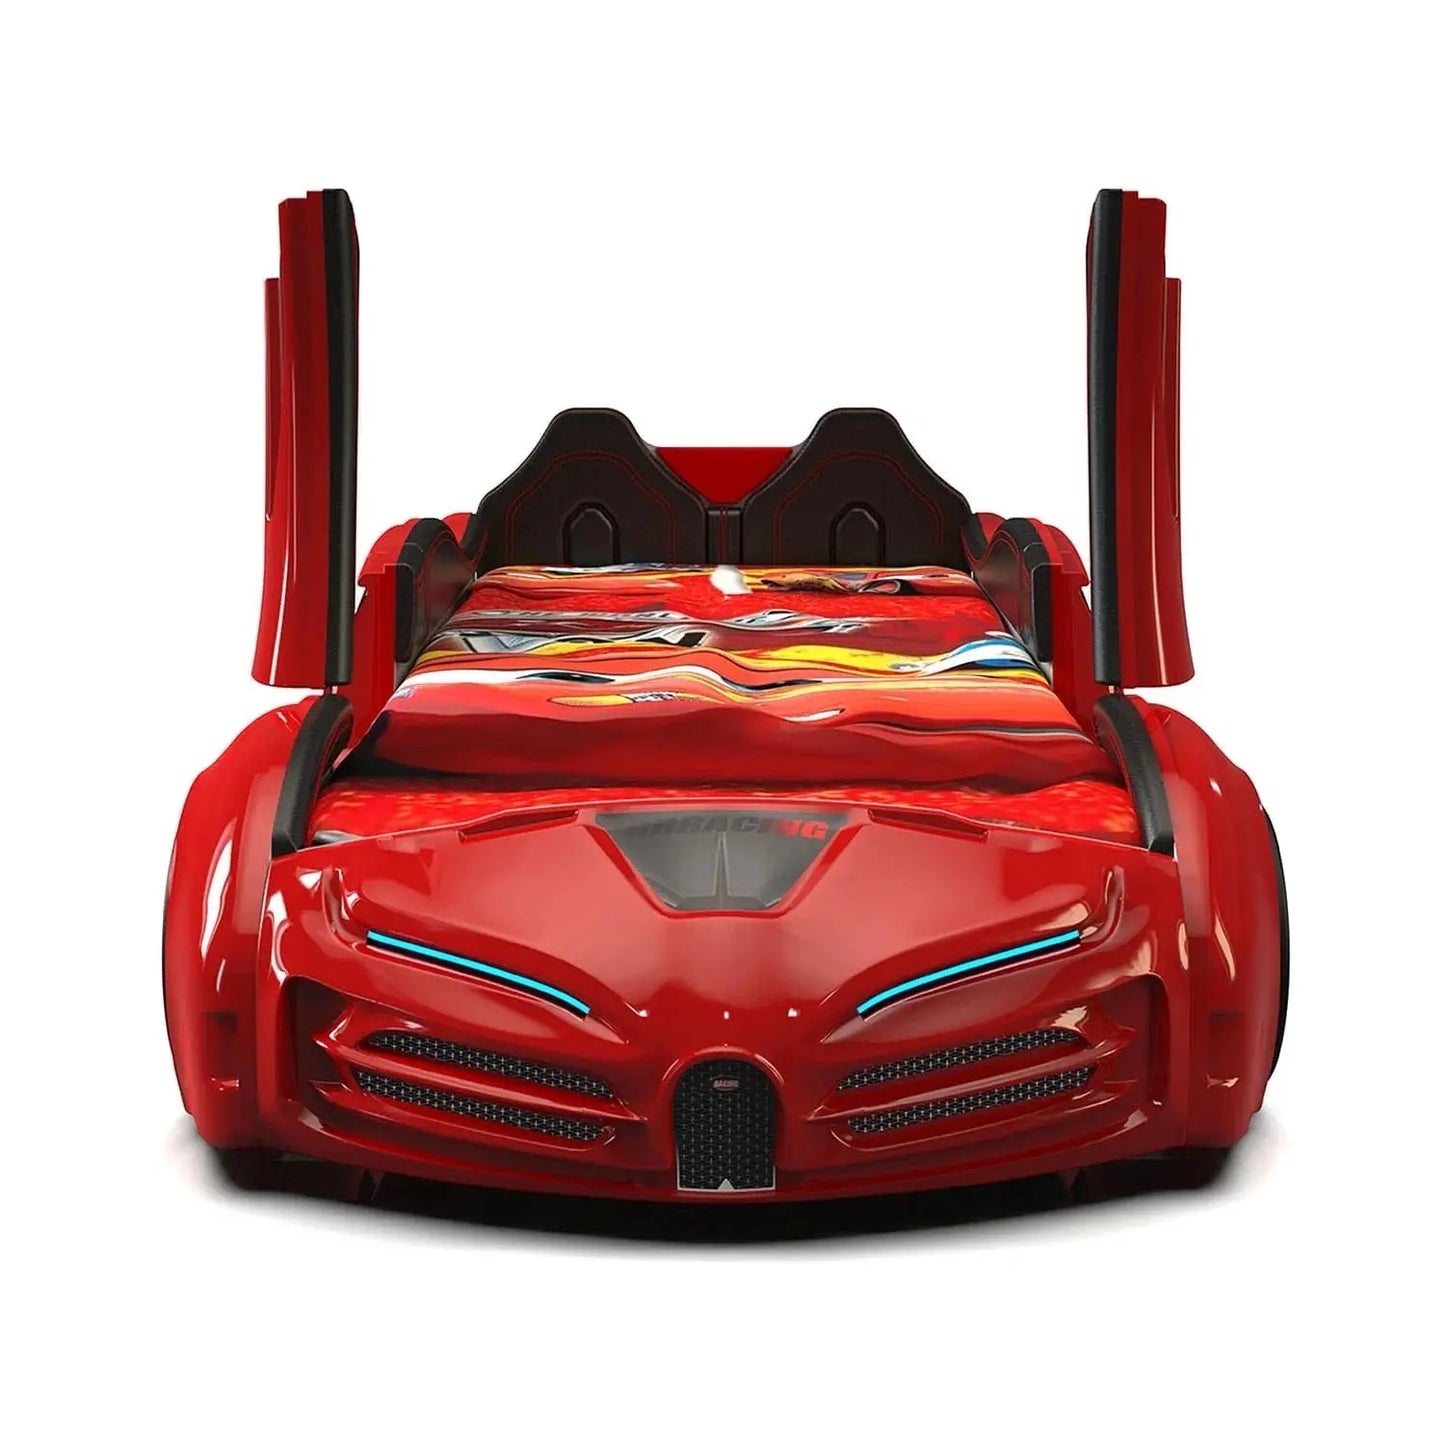 T8 Premium Super Car Bed